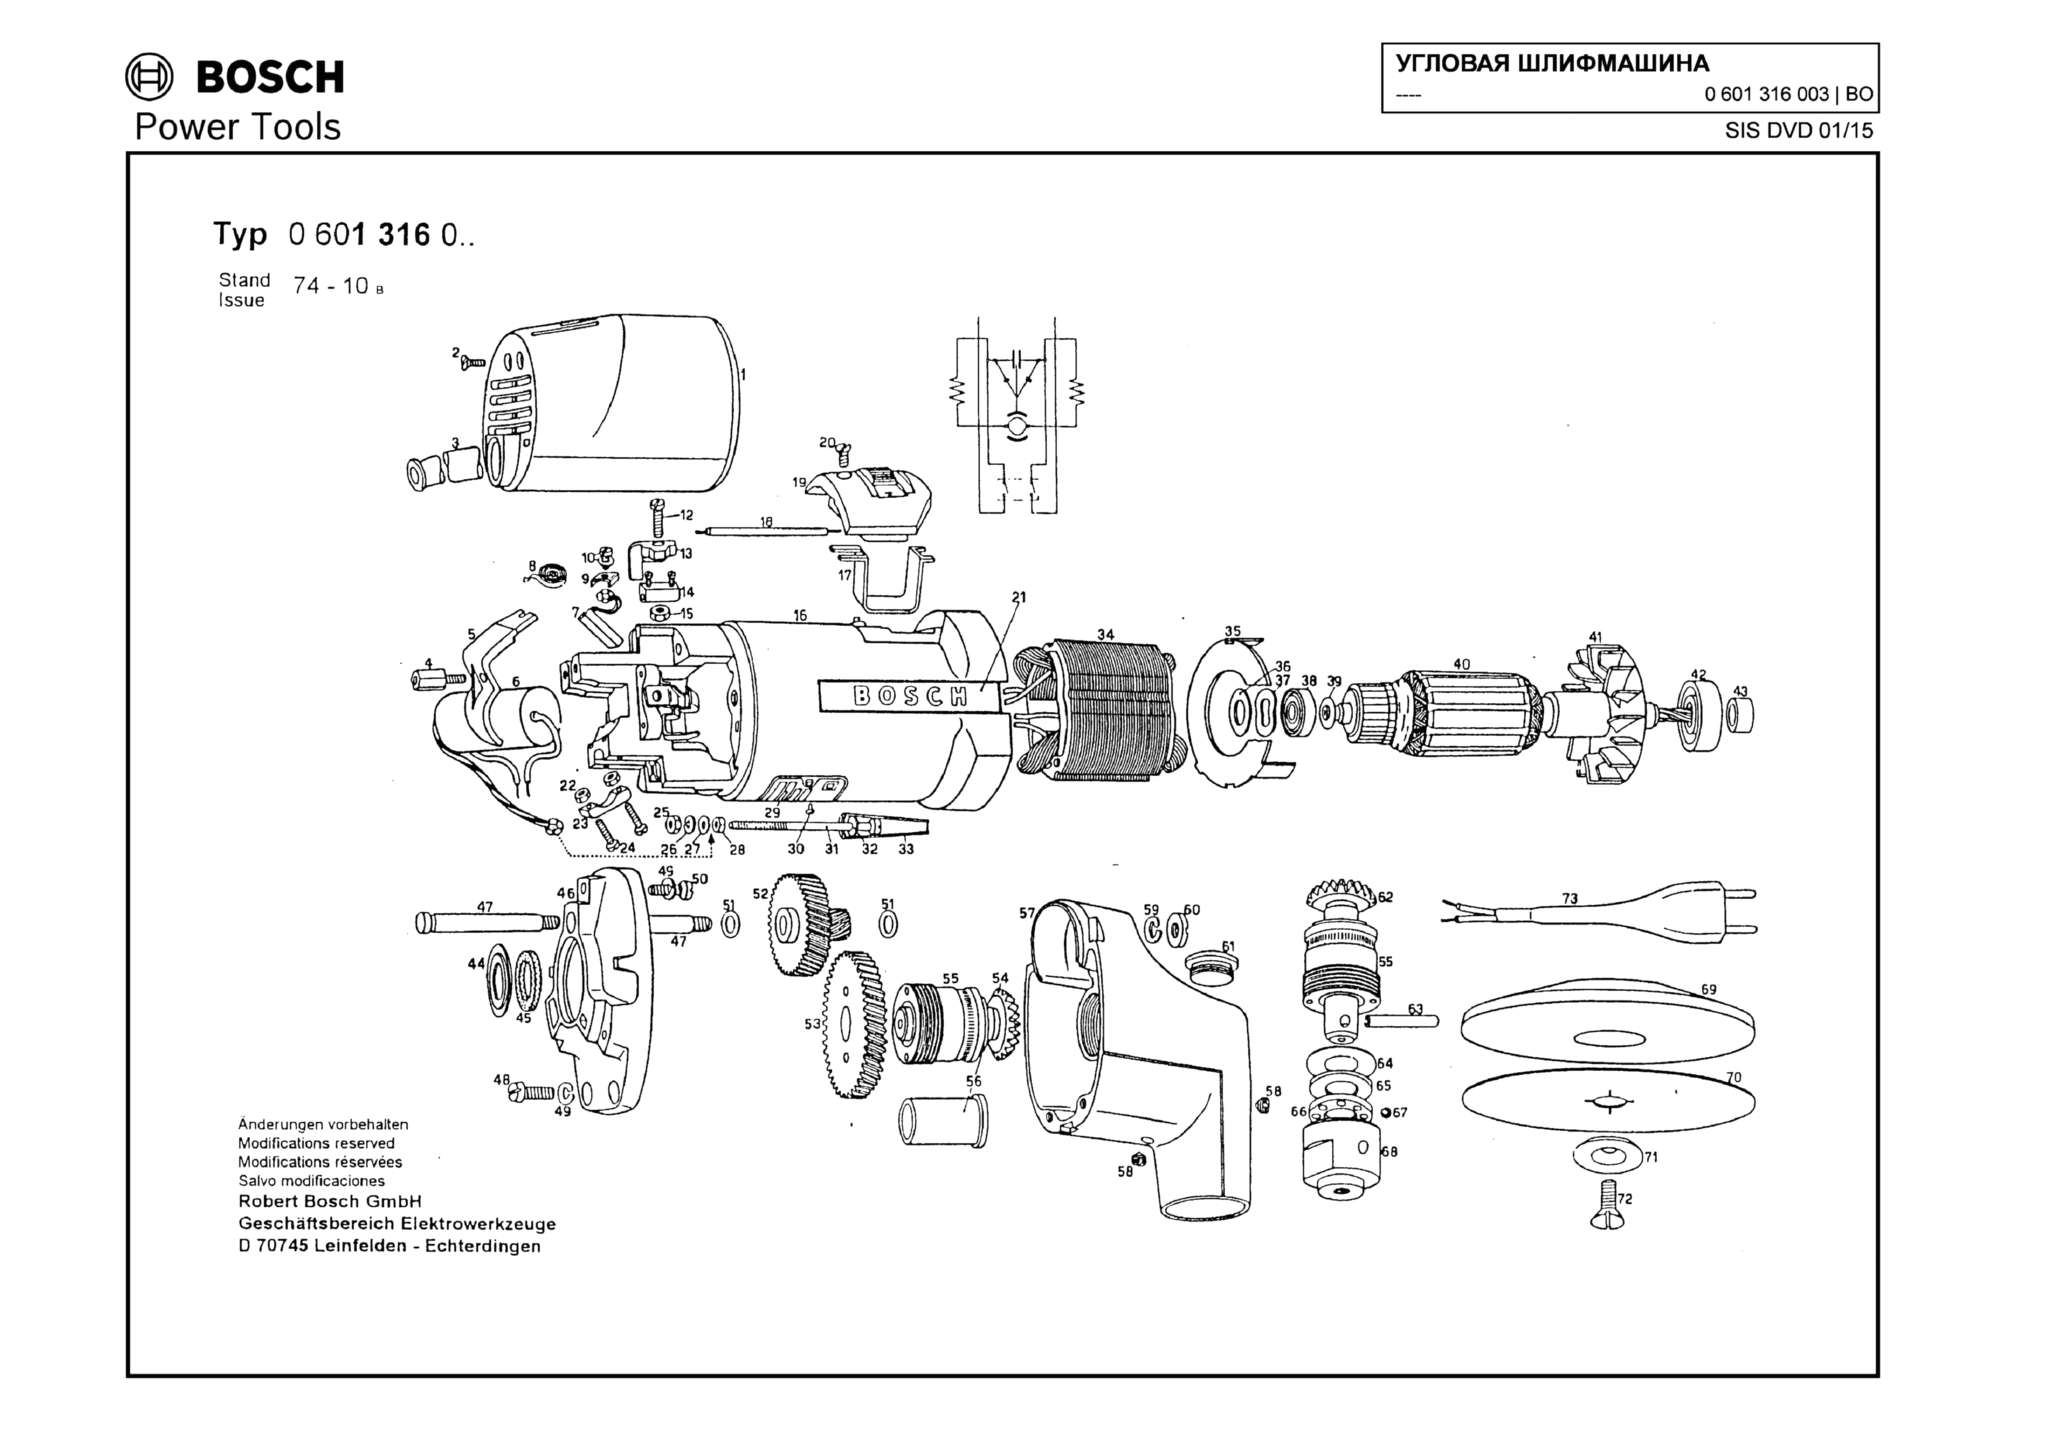 Запчасти, схема и деталировка Bosch (ТИП 0601316003)